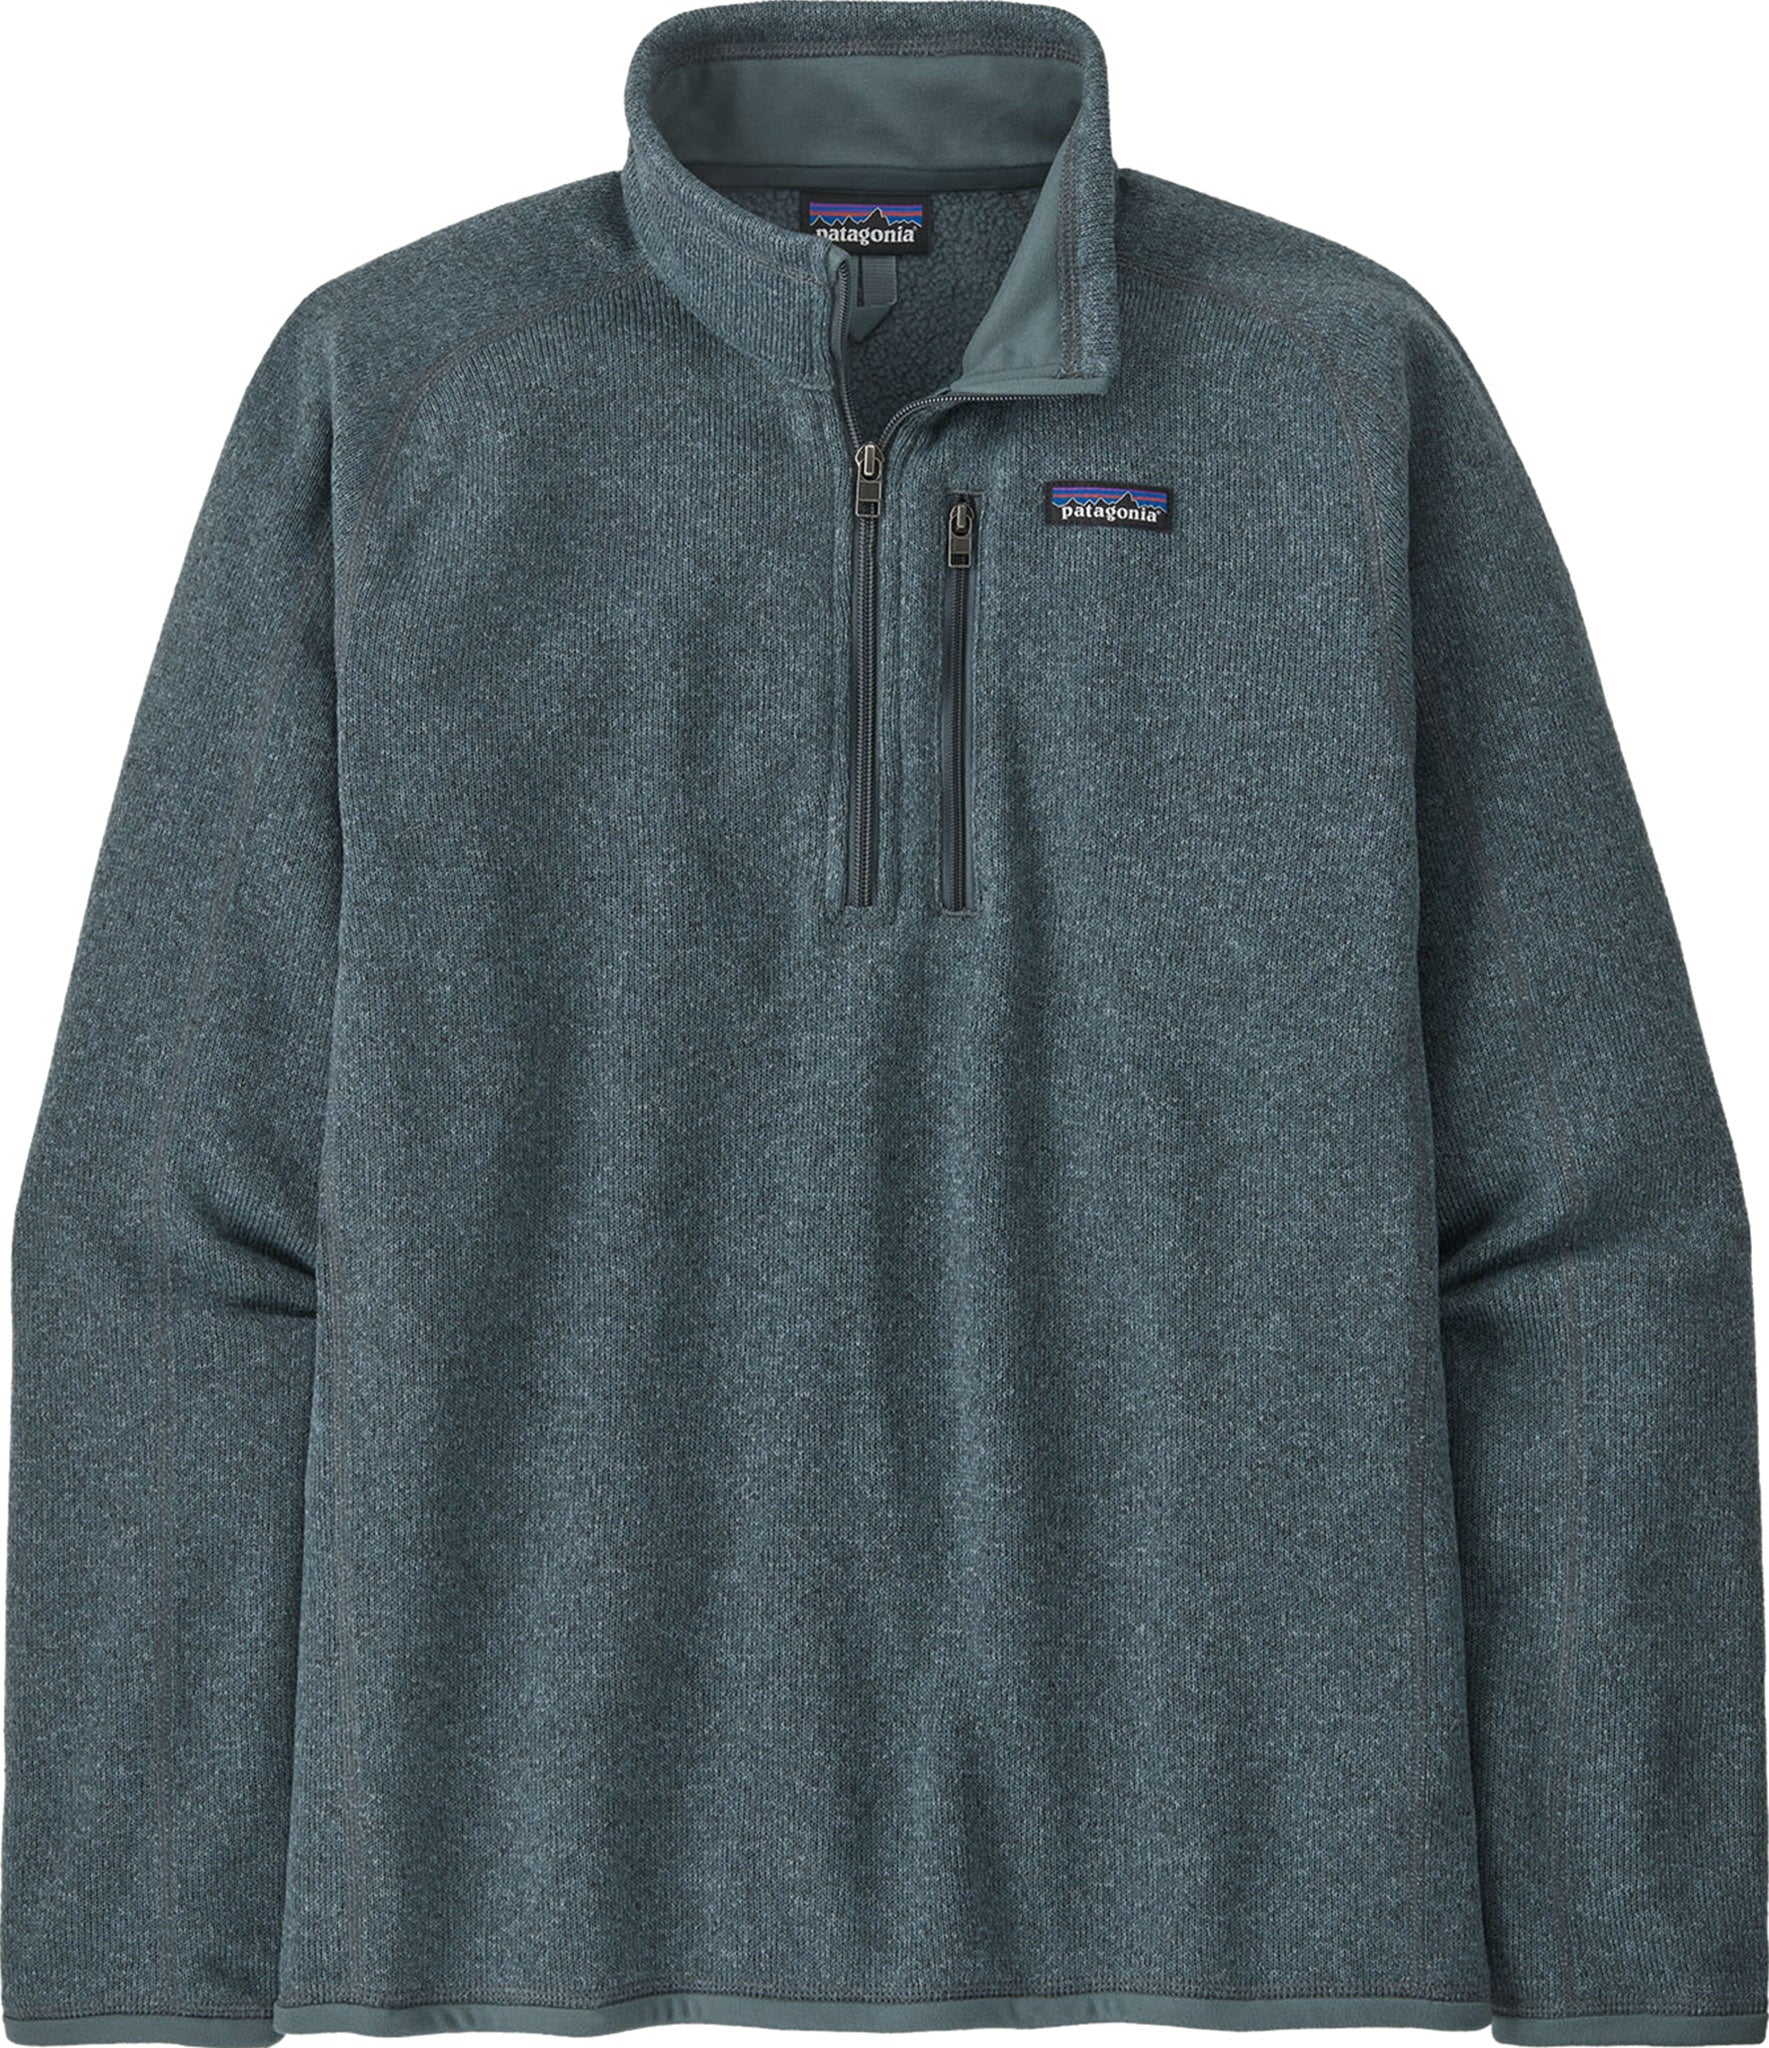 Patagonia Micro D Pullover 1/4 Zip Fleece Sweatshirt Women's Medium Green